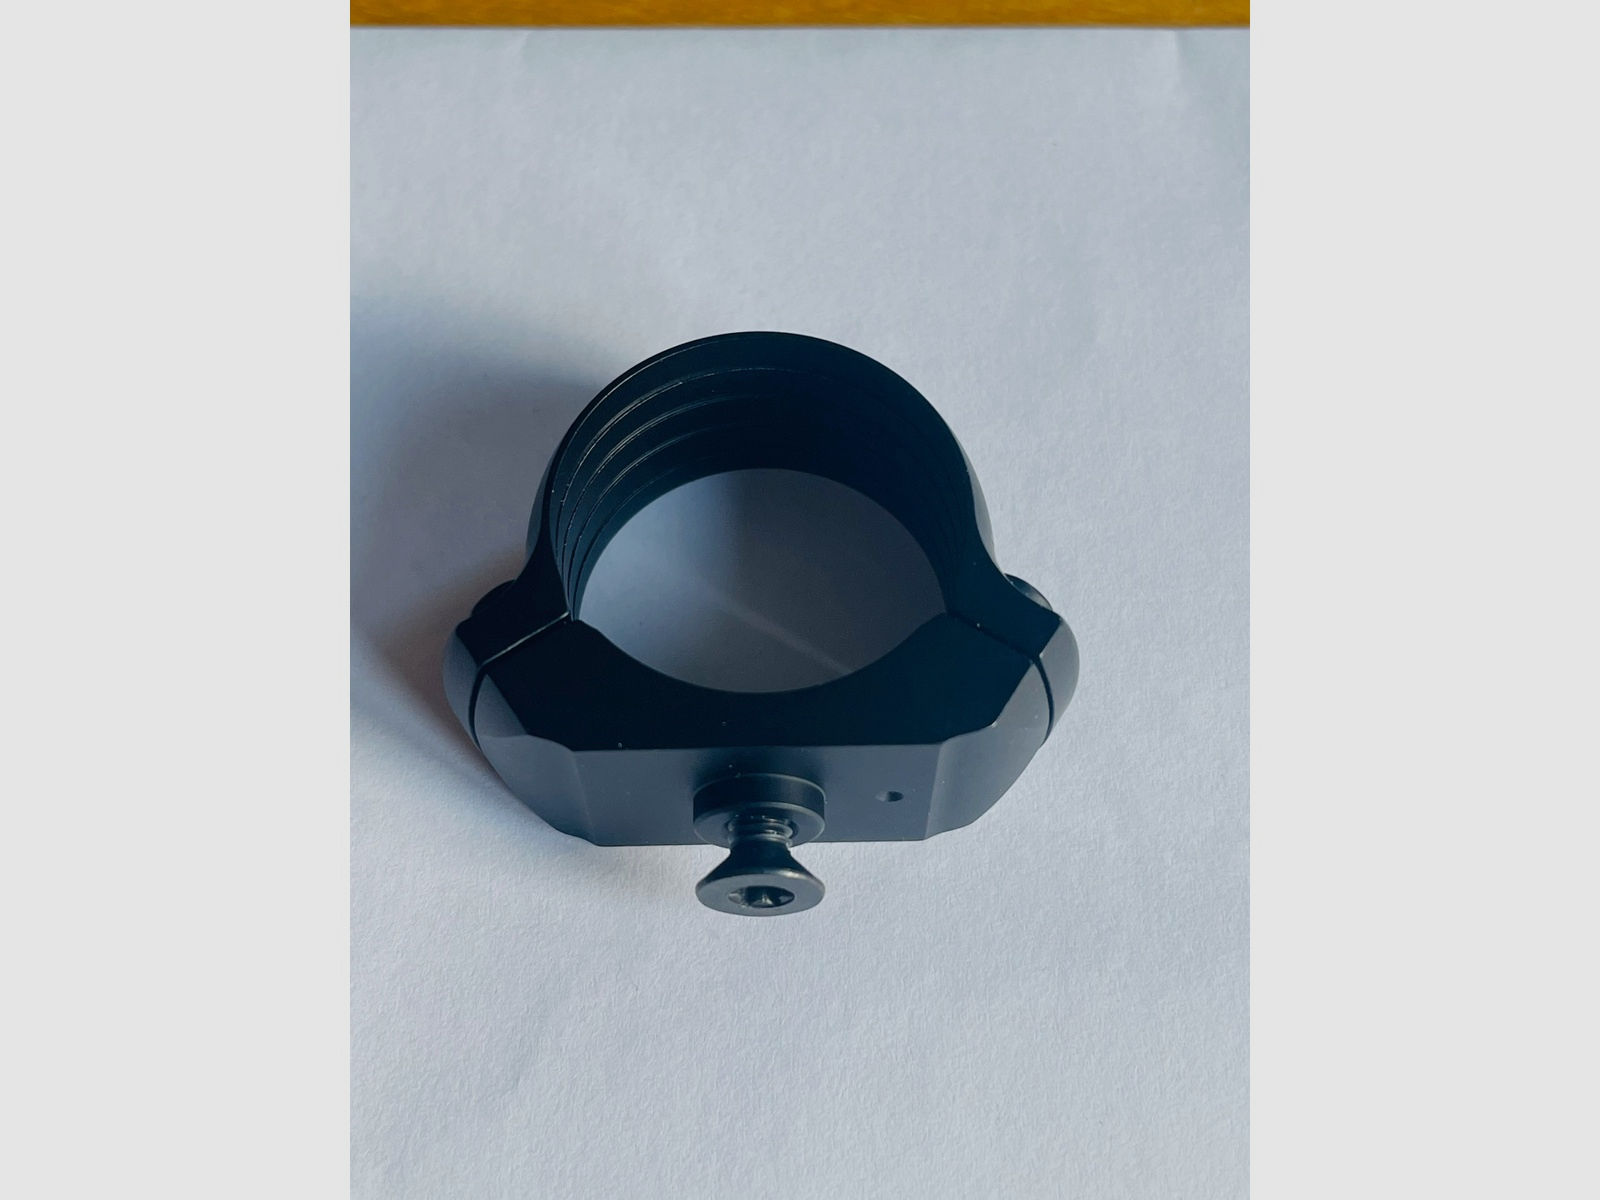 2x Dentler Montage BASIS ® Ringe | Montageringe ø 25,4mm BH 3,5mm 